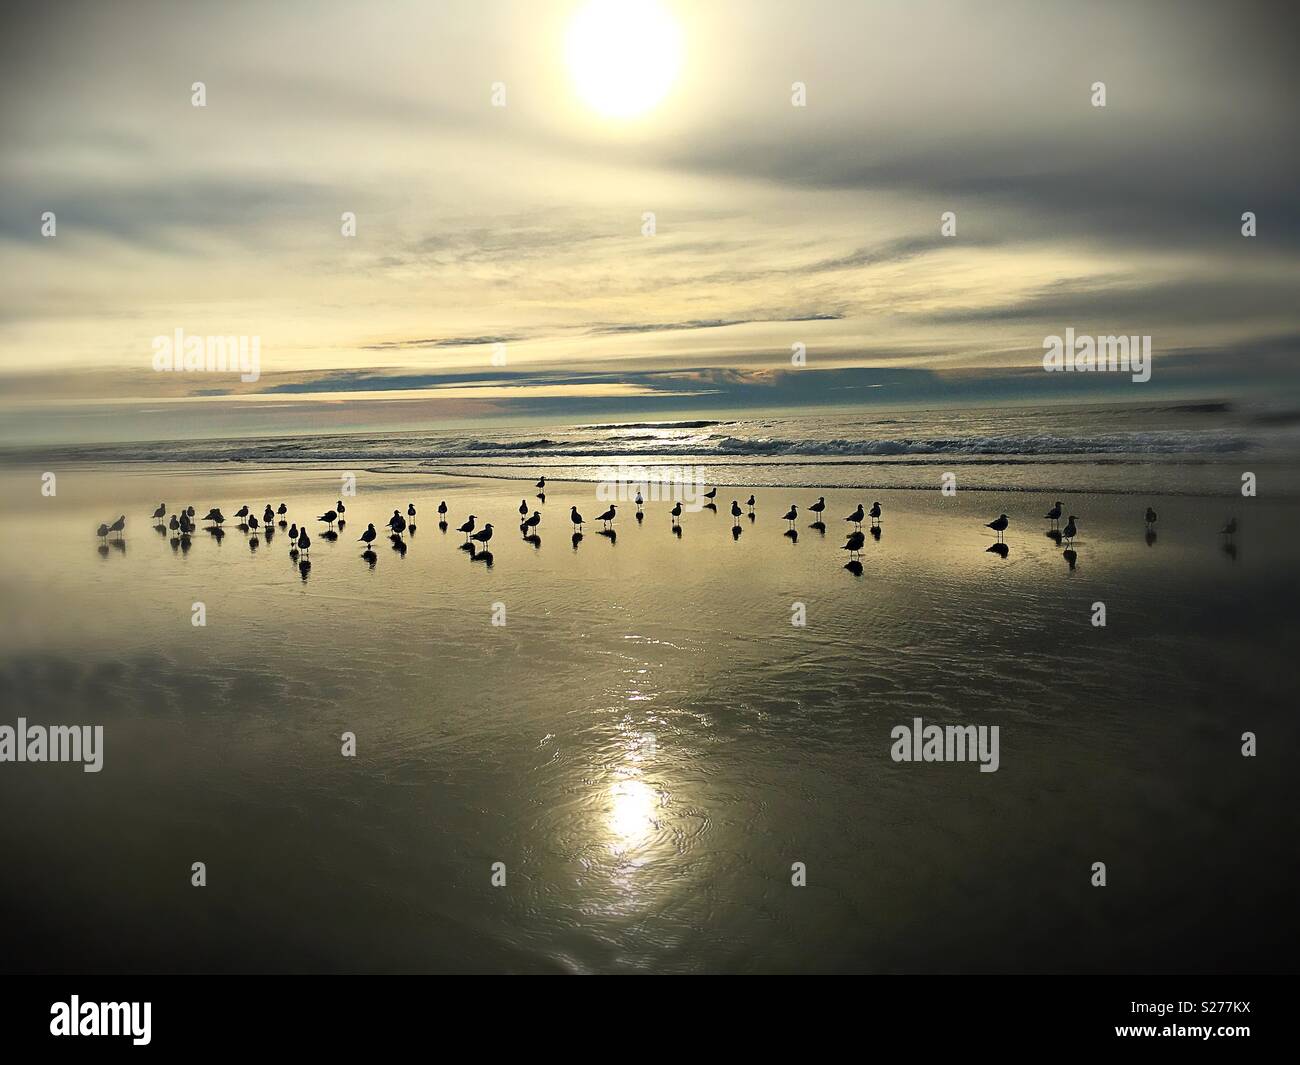 Birds on a beach. Stock Photo